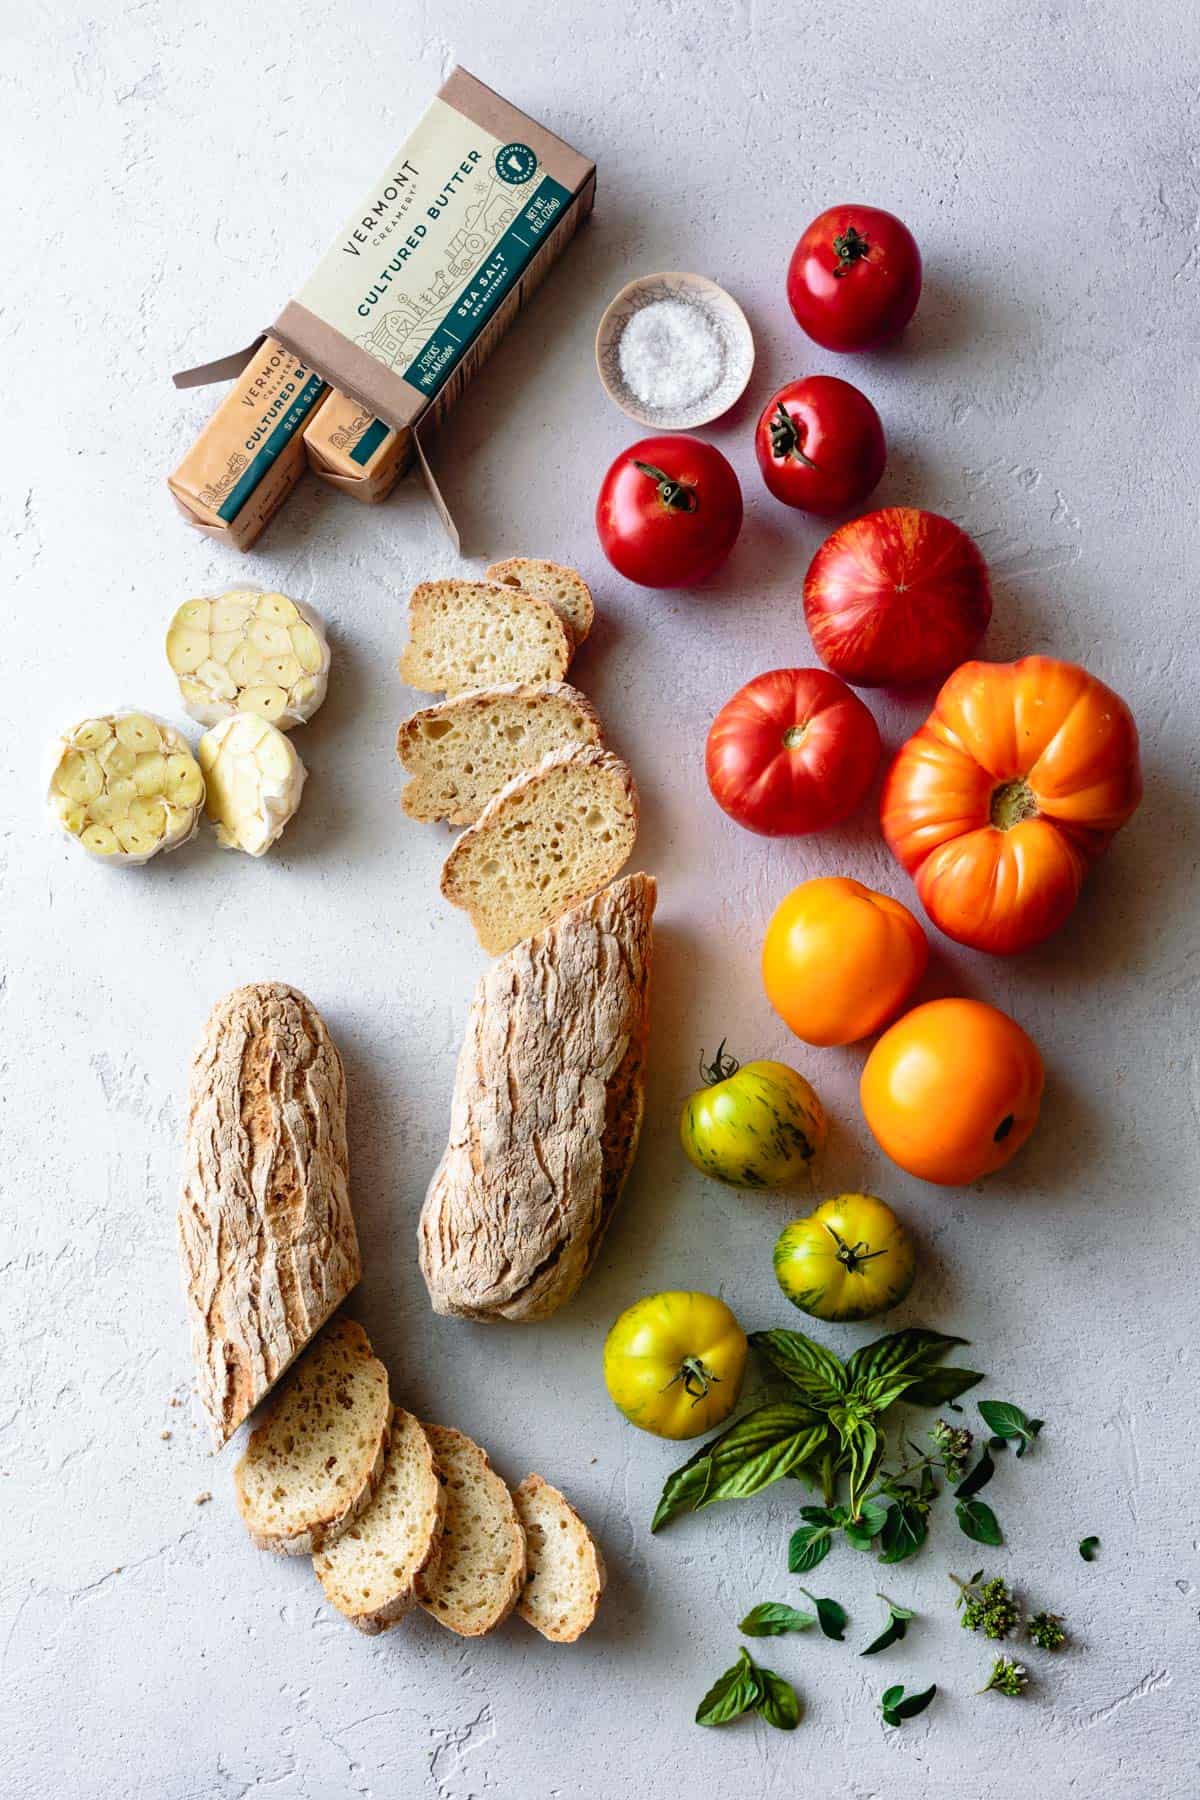 Ingredients for Gluten-Free Garlic Bread Bruschetta